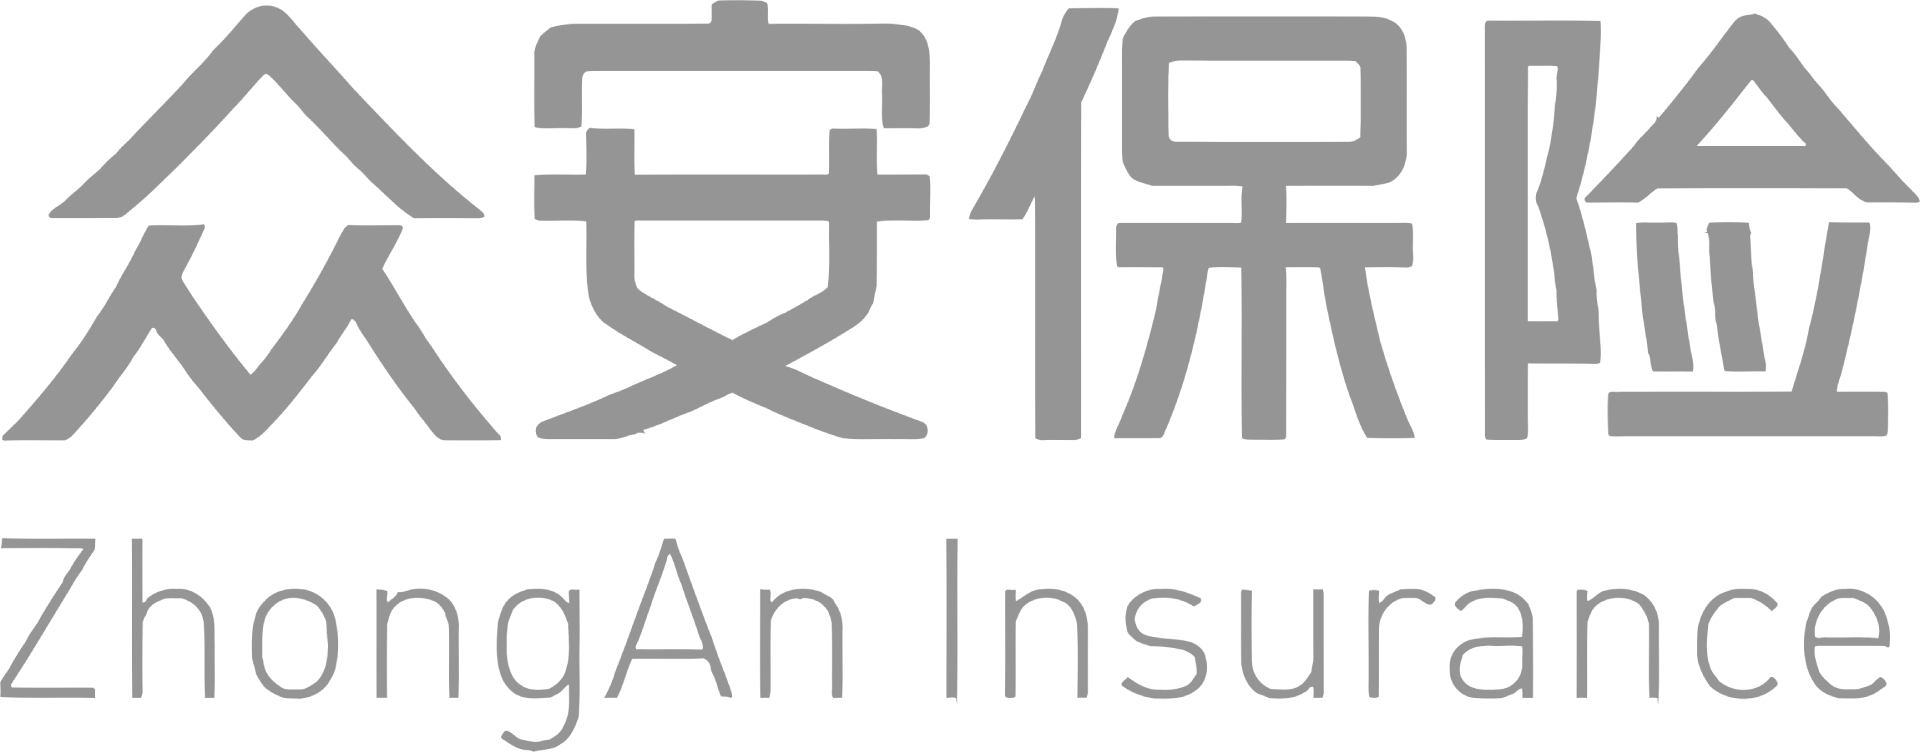 ZhongAn Insurance  logo large (transparent PNG)